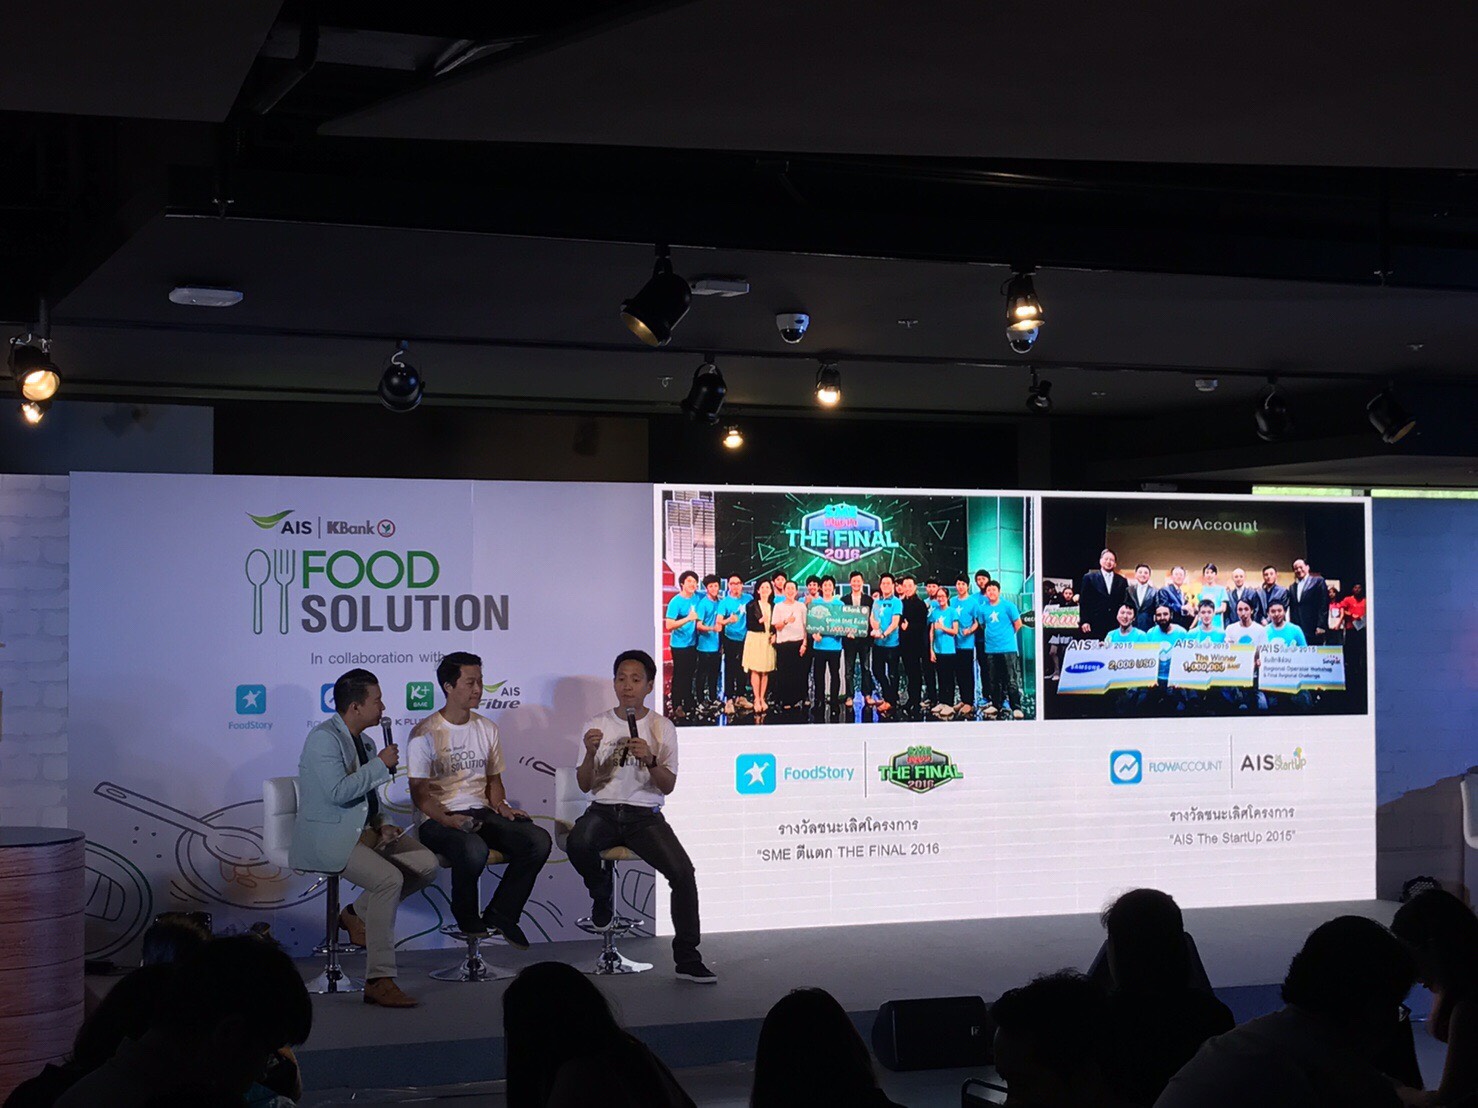 นายปรัธนา ลีลพนัง รักษาการหัวหน้าคณะผู้บริหารด้านการตลาด บริษัท แอดวานซ์ อินโฟร์ เซอร์วิส จำกัด (มหาชน) ให้ข้อมูลด้านเครื่อข่ายดิจิทัลที่จะมาอำนวยความสะดวก Food Solution - Startup Thailand Focus